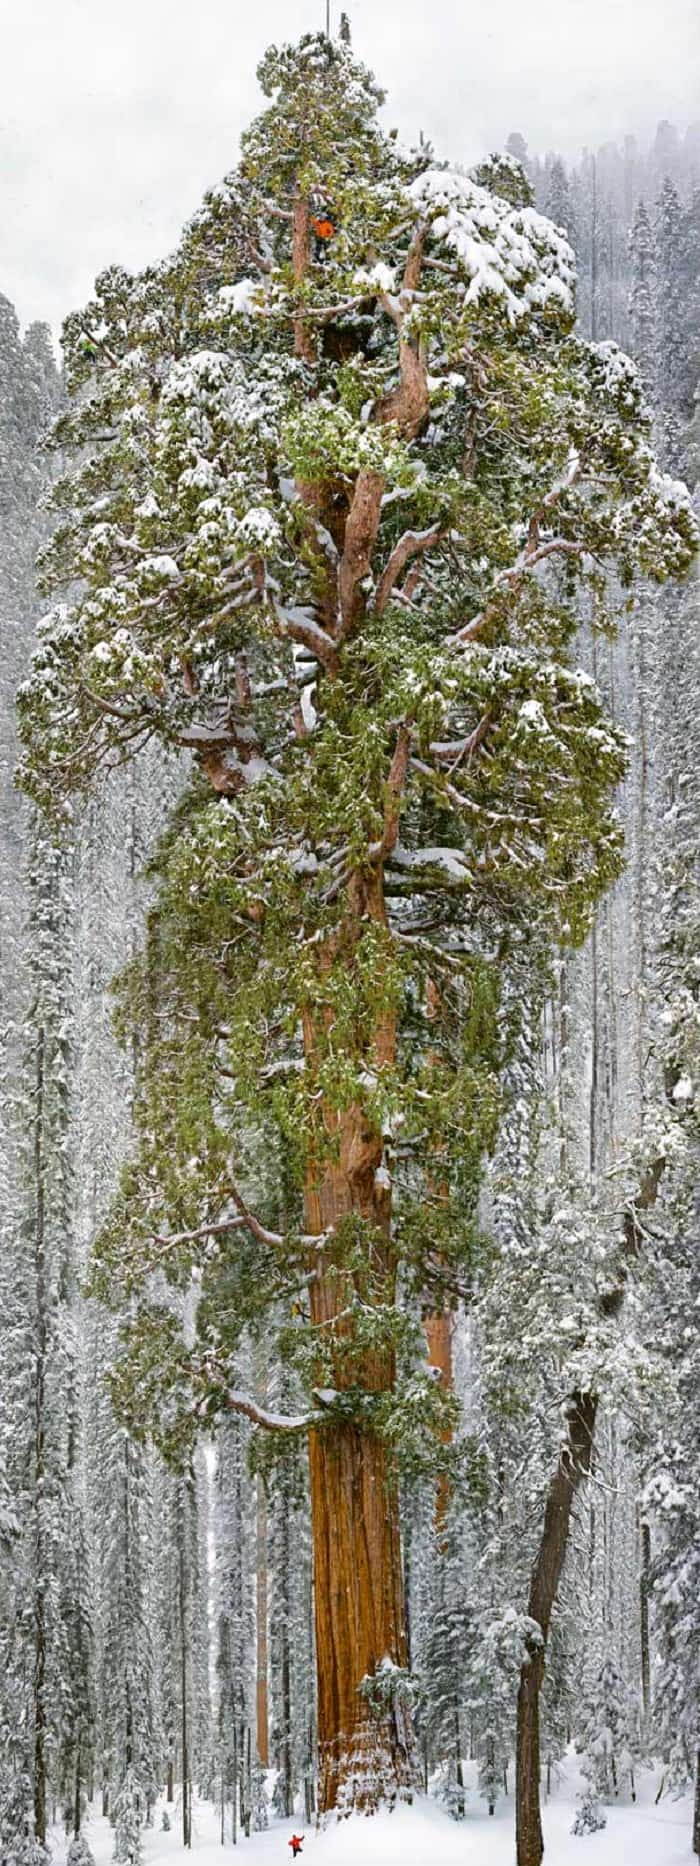 Hombre en la cima de un árbol seqoia muy grande en condiciones de nieve 